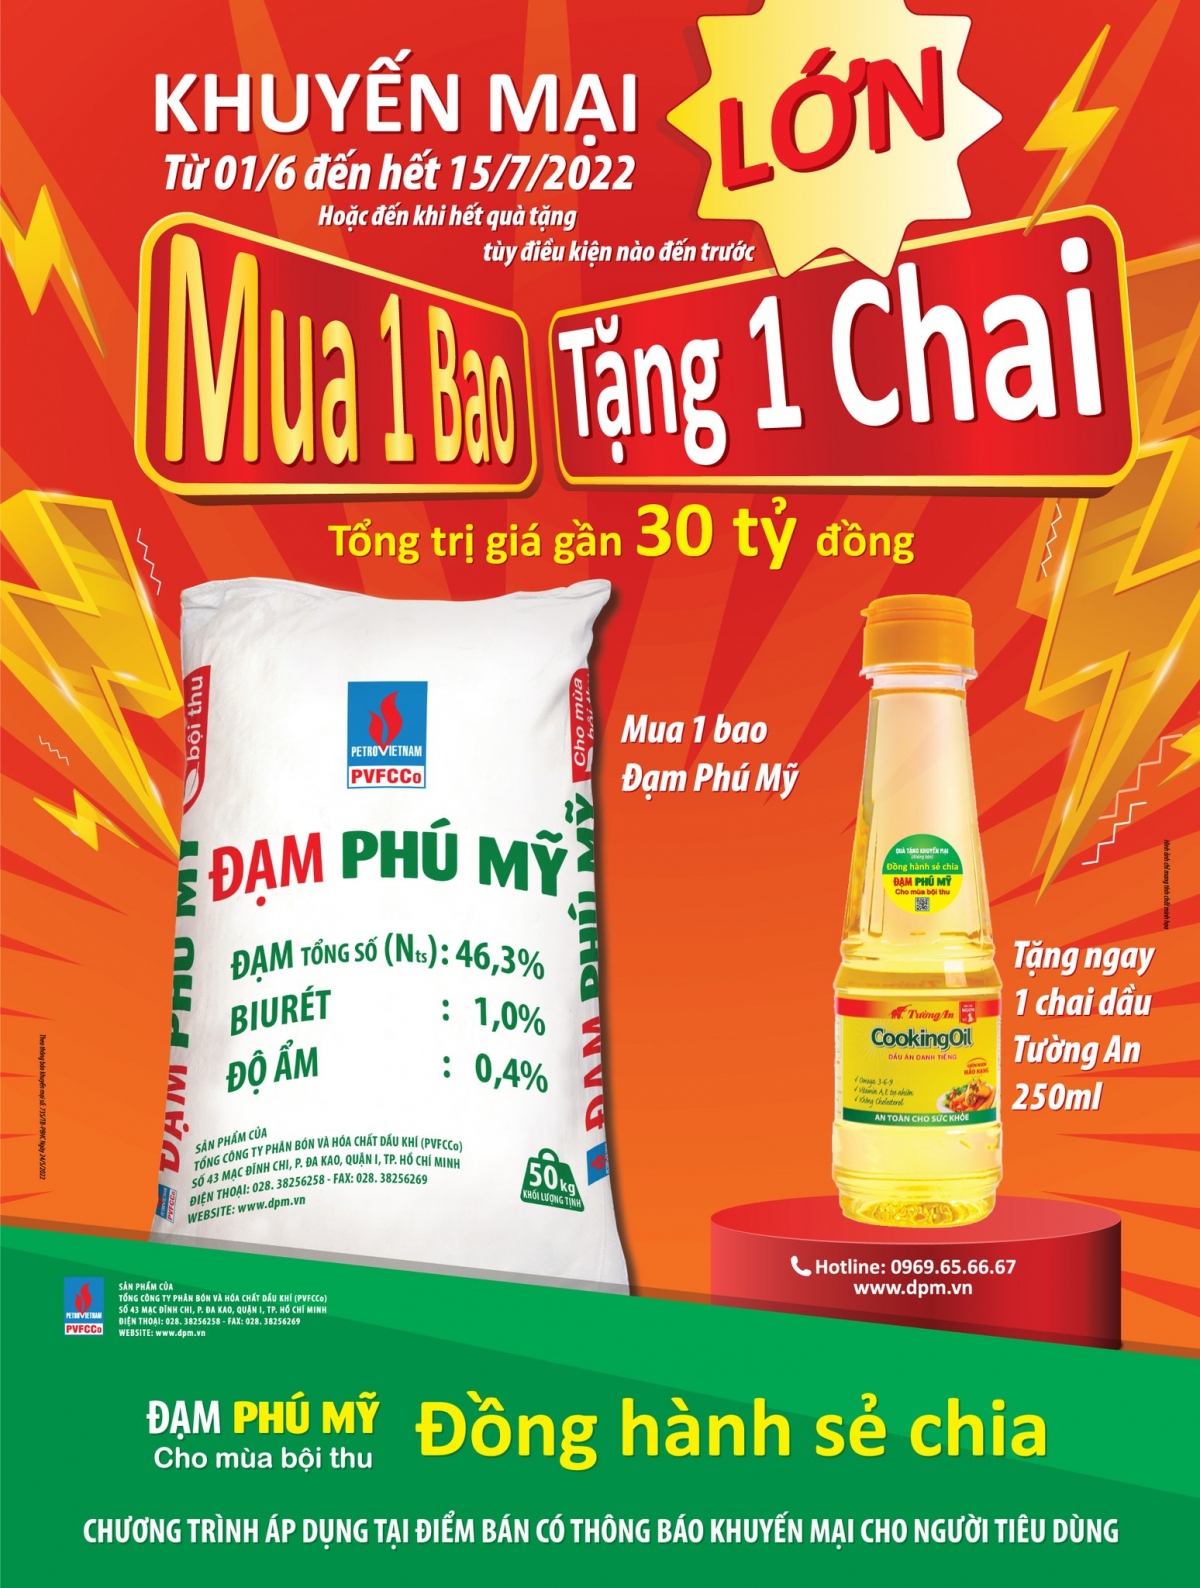  Dam phu my - Dong hanh se chia 2 trieu chai dau an tang ba con nong dan hinh anh 1